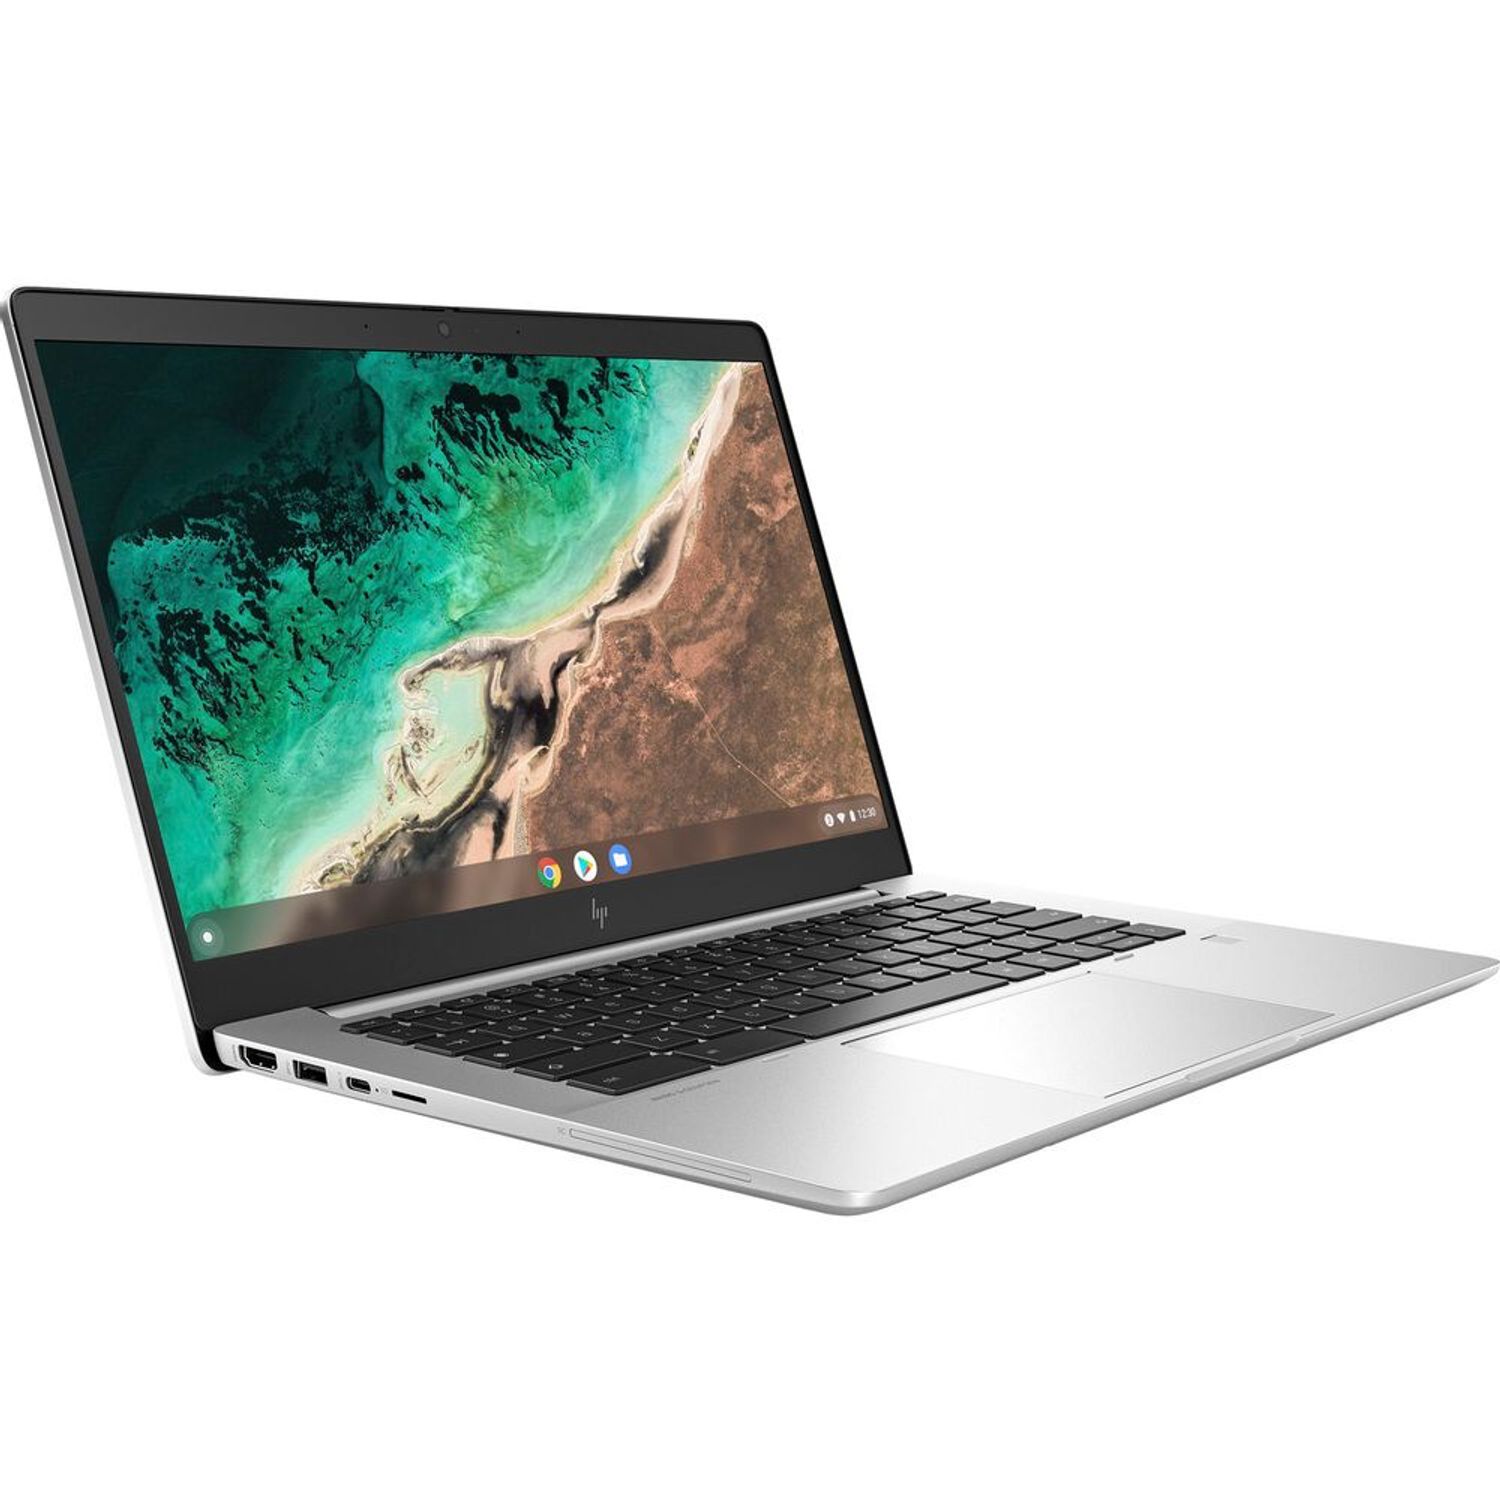 HP presenta su Chromebook 11 G5 con pantalla táctil